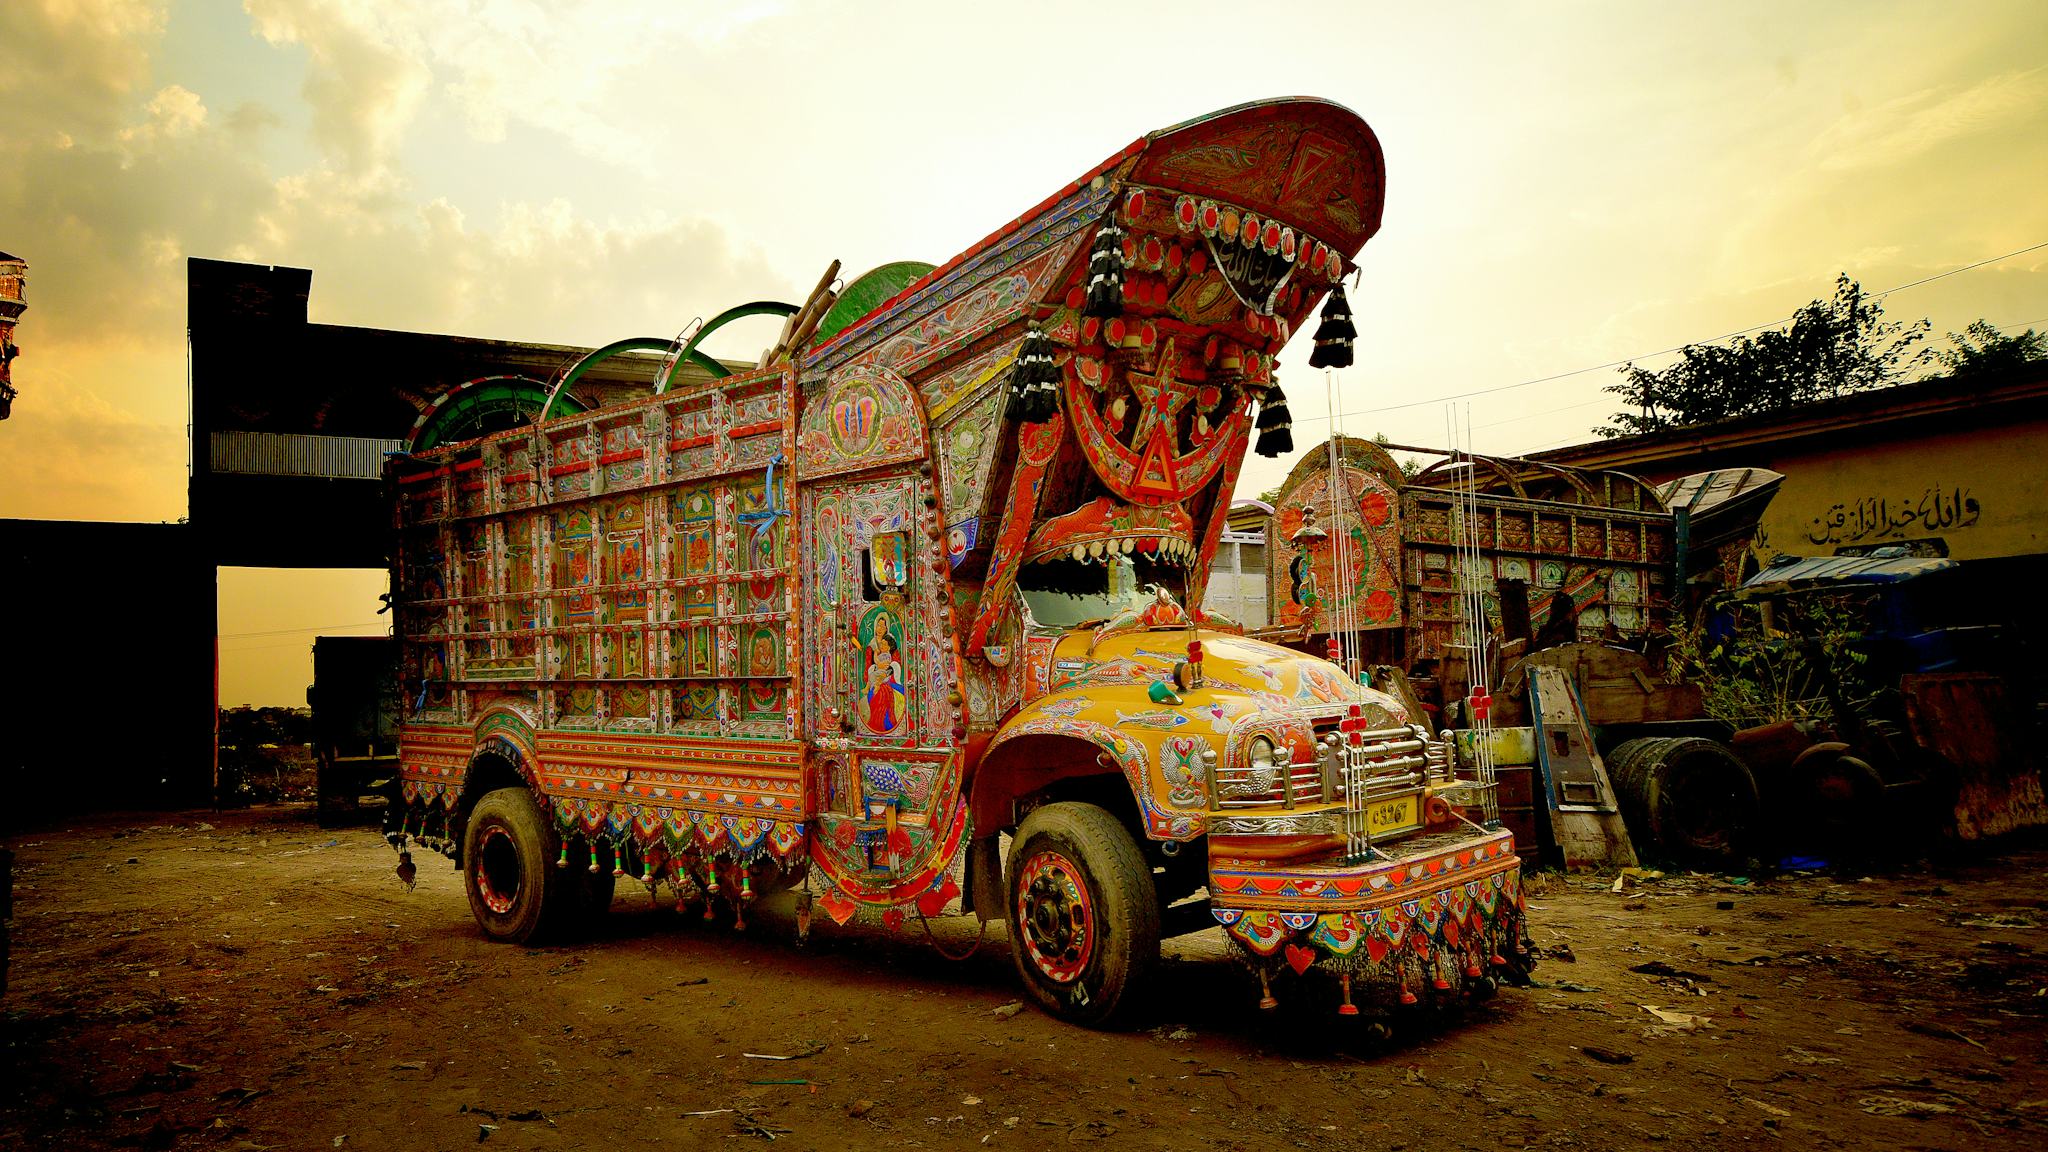 En dekorerad lastbil i pakistan full av målningar